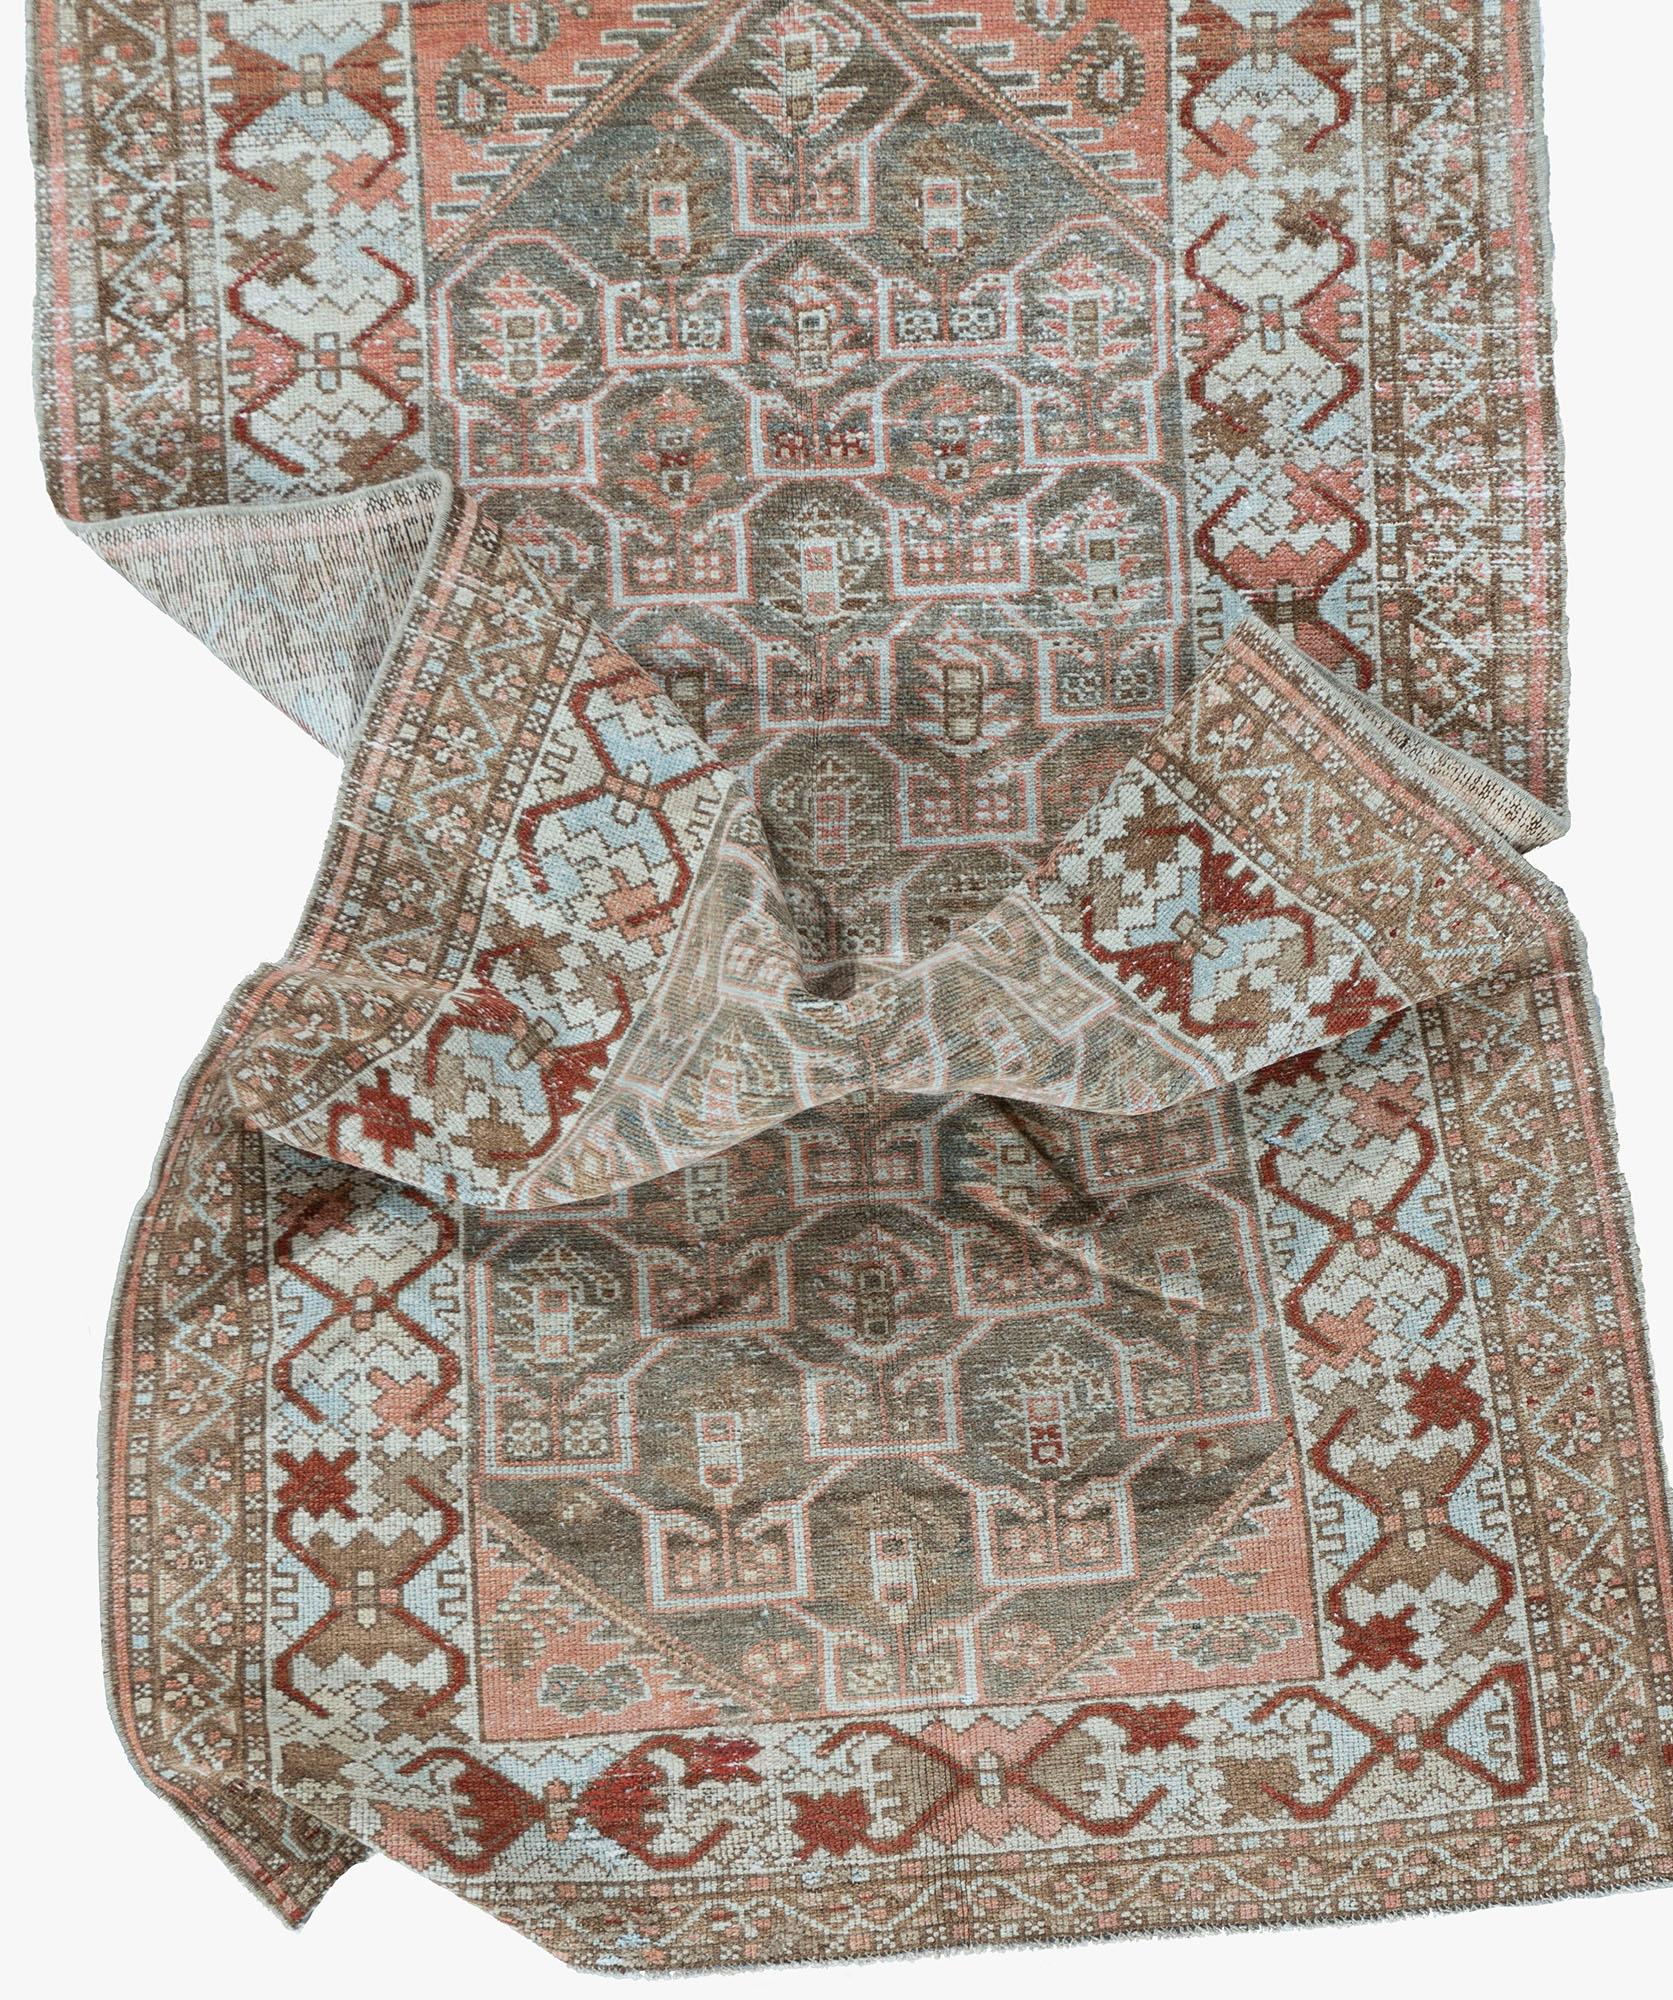 Tapis Vintage Persan Malayer 3'2 X 6'3. Les tapis anciens et vintage de Malayer, à l'est de Hamadan, peuvent être considérés comme des tapis de Hamadan de qualité supérieure et présentent des aspects structurels similaires. Bien qu'apparemment